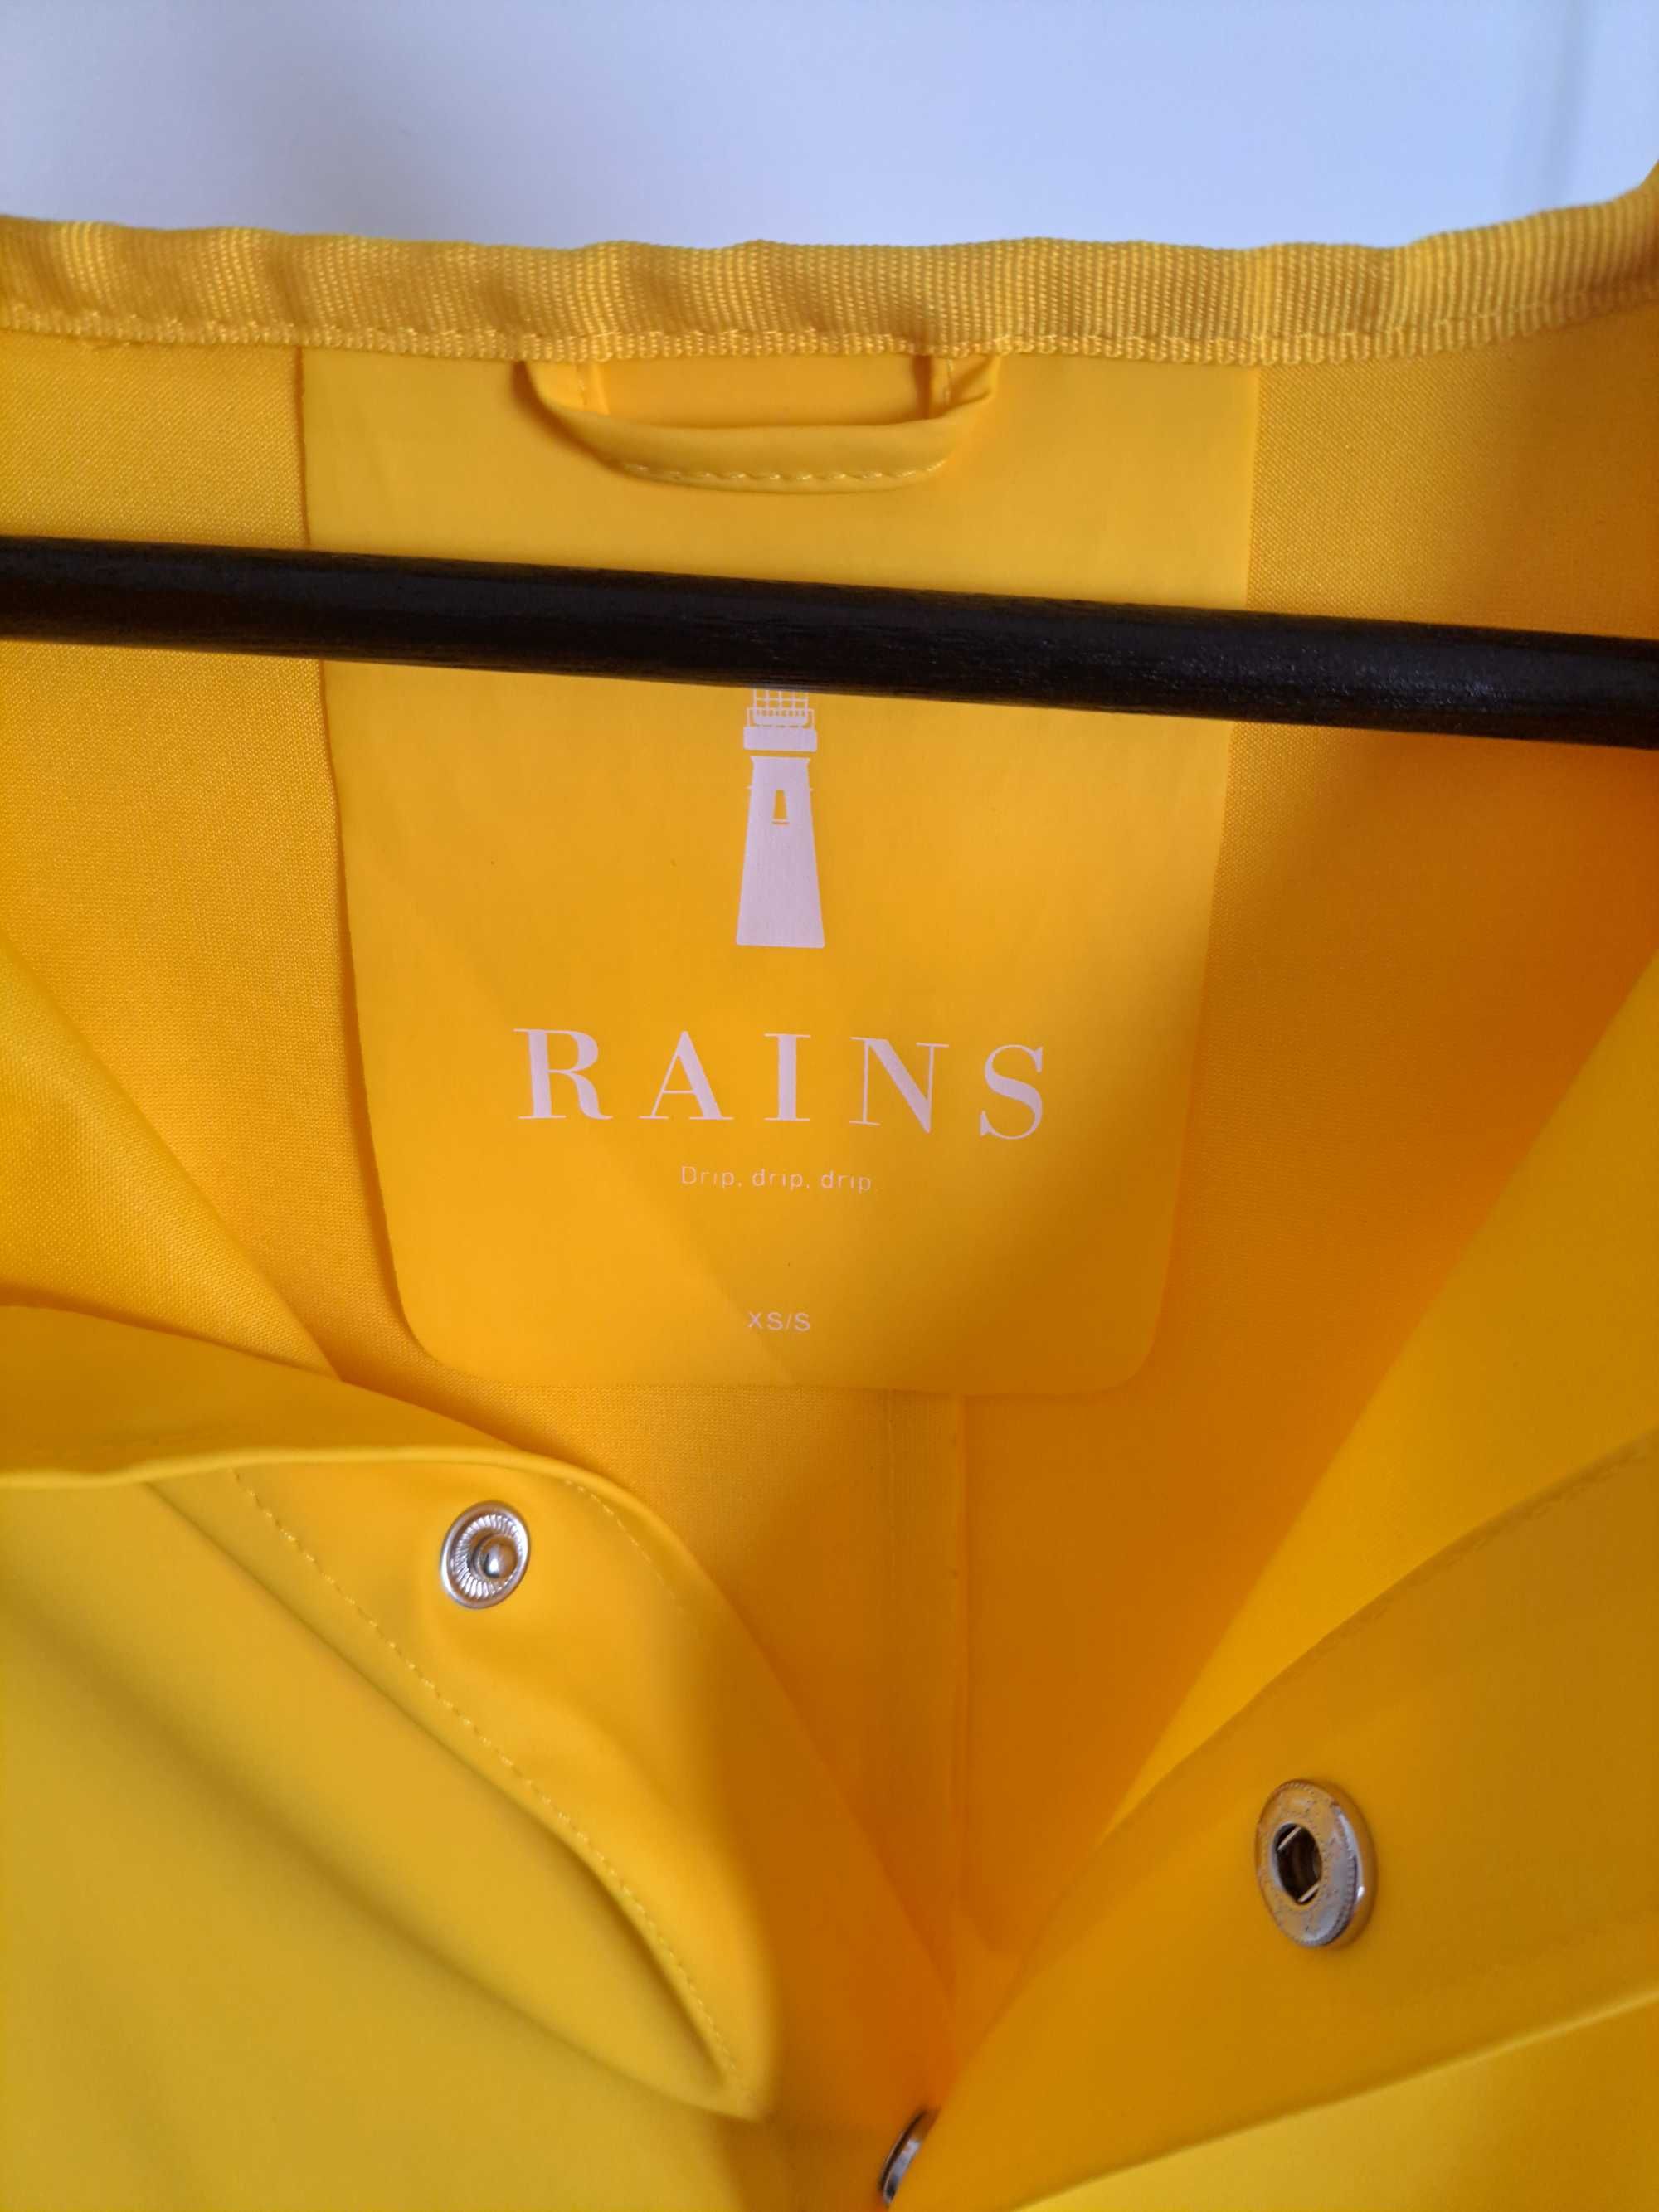 Blusão impermeável RAINS Amarelo no tamanho XS/S = M normal